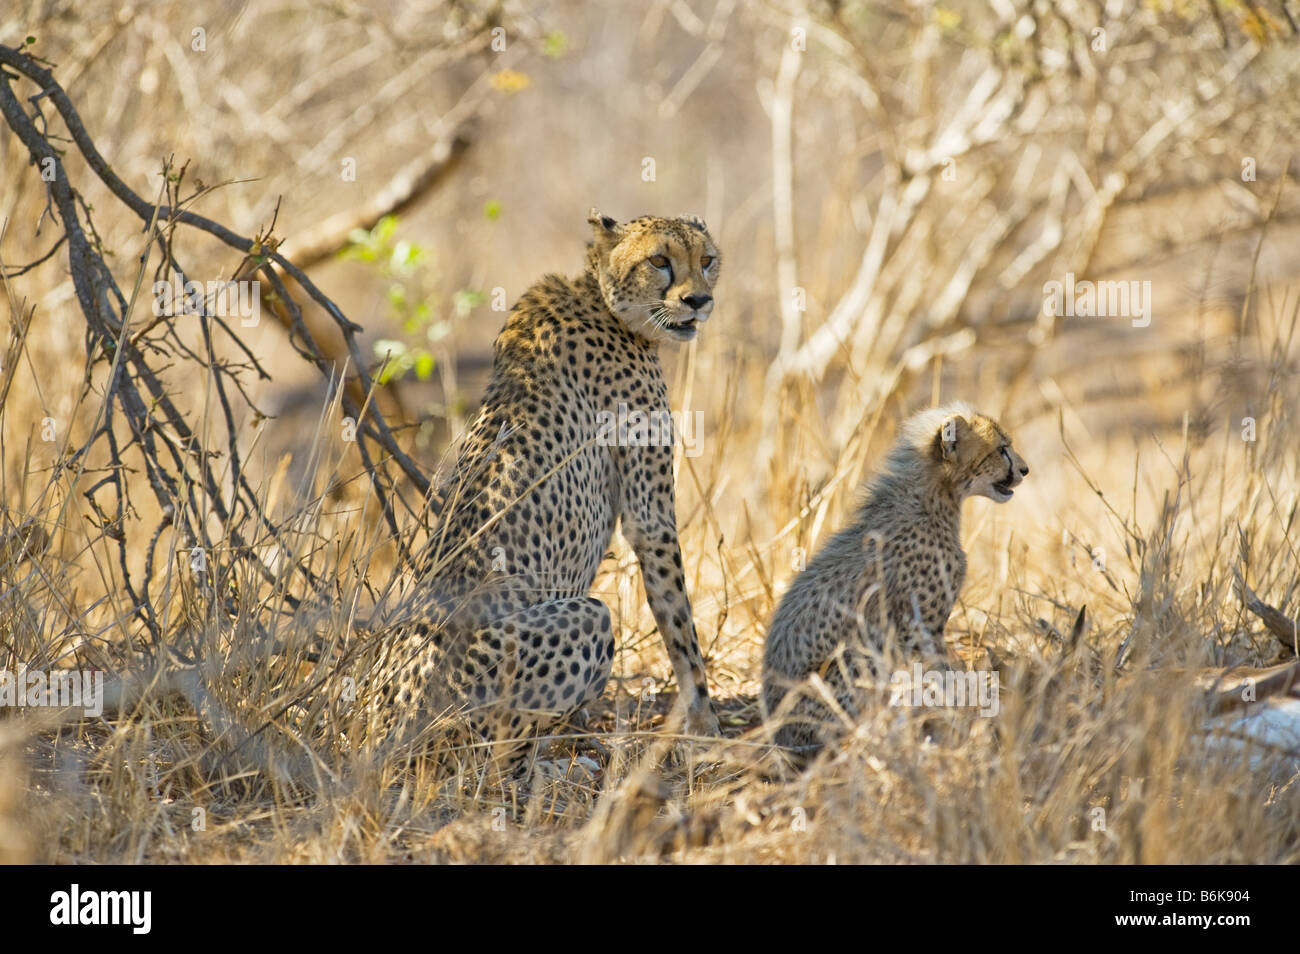 Tierwelt Geparden Gepard Mutter mit jungen Acinonyx Jubatus erwischt ein Impala nehmen Beute Südafrika Süd Afrika Wildnis sou Stockfoto